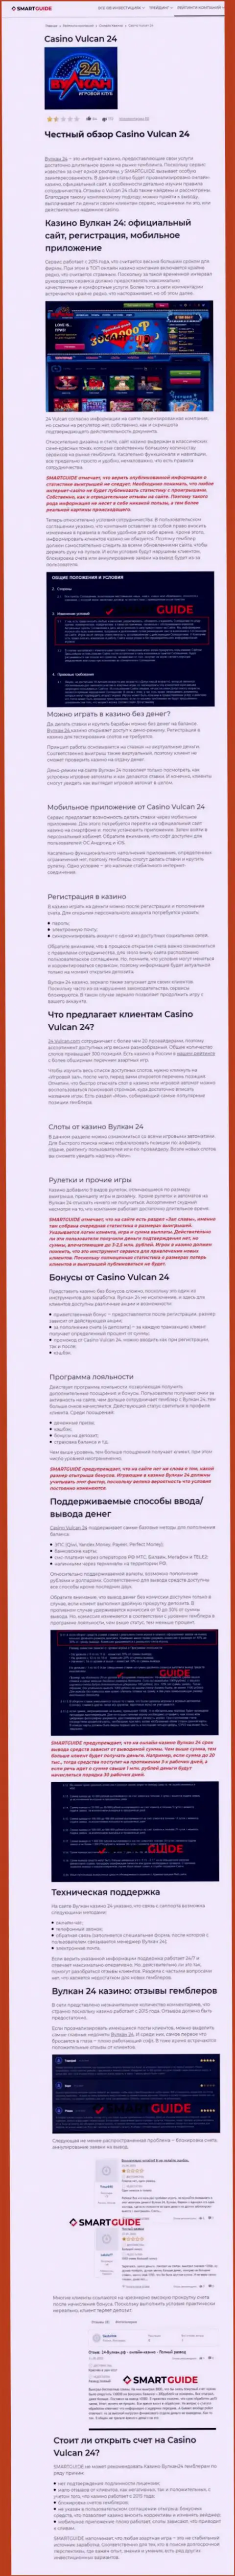 Вулкан-24 Ком - это контора, которая зарабатывает на присваивании денежных вложений своих реальных клиентов (обзор противозаконных действий)